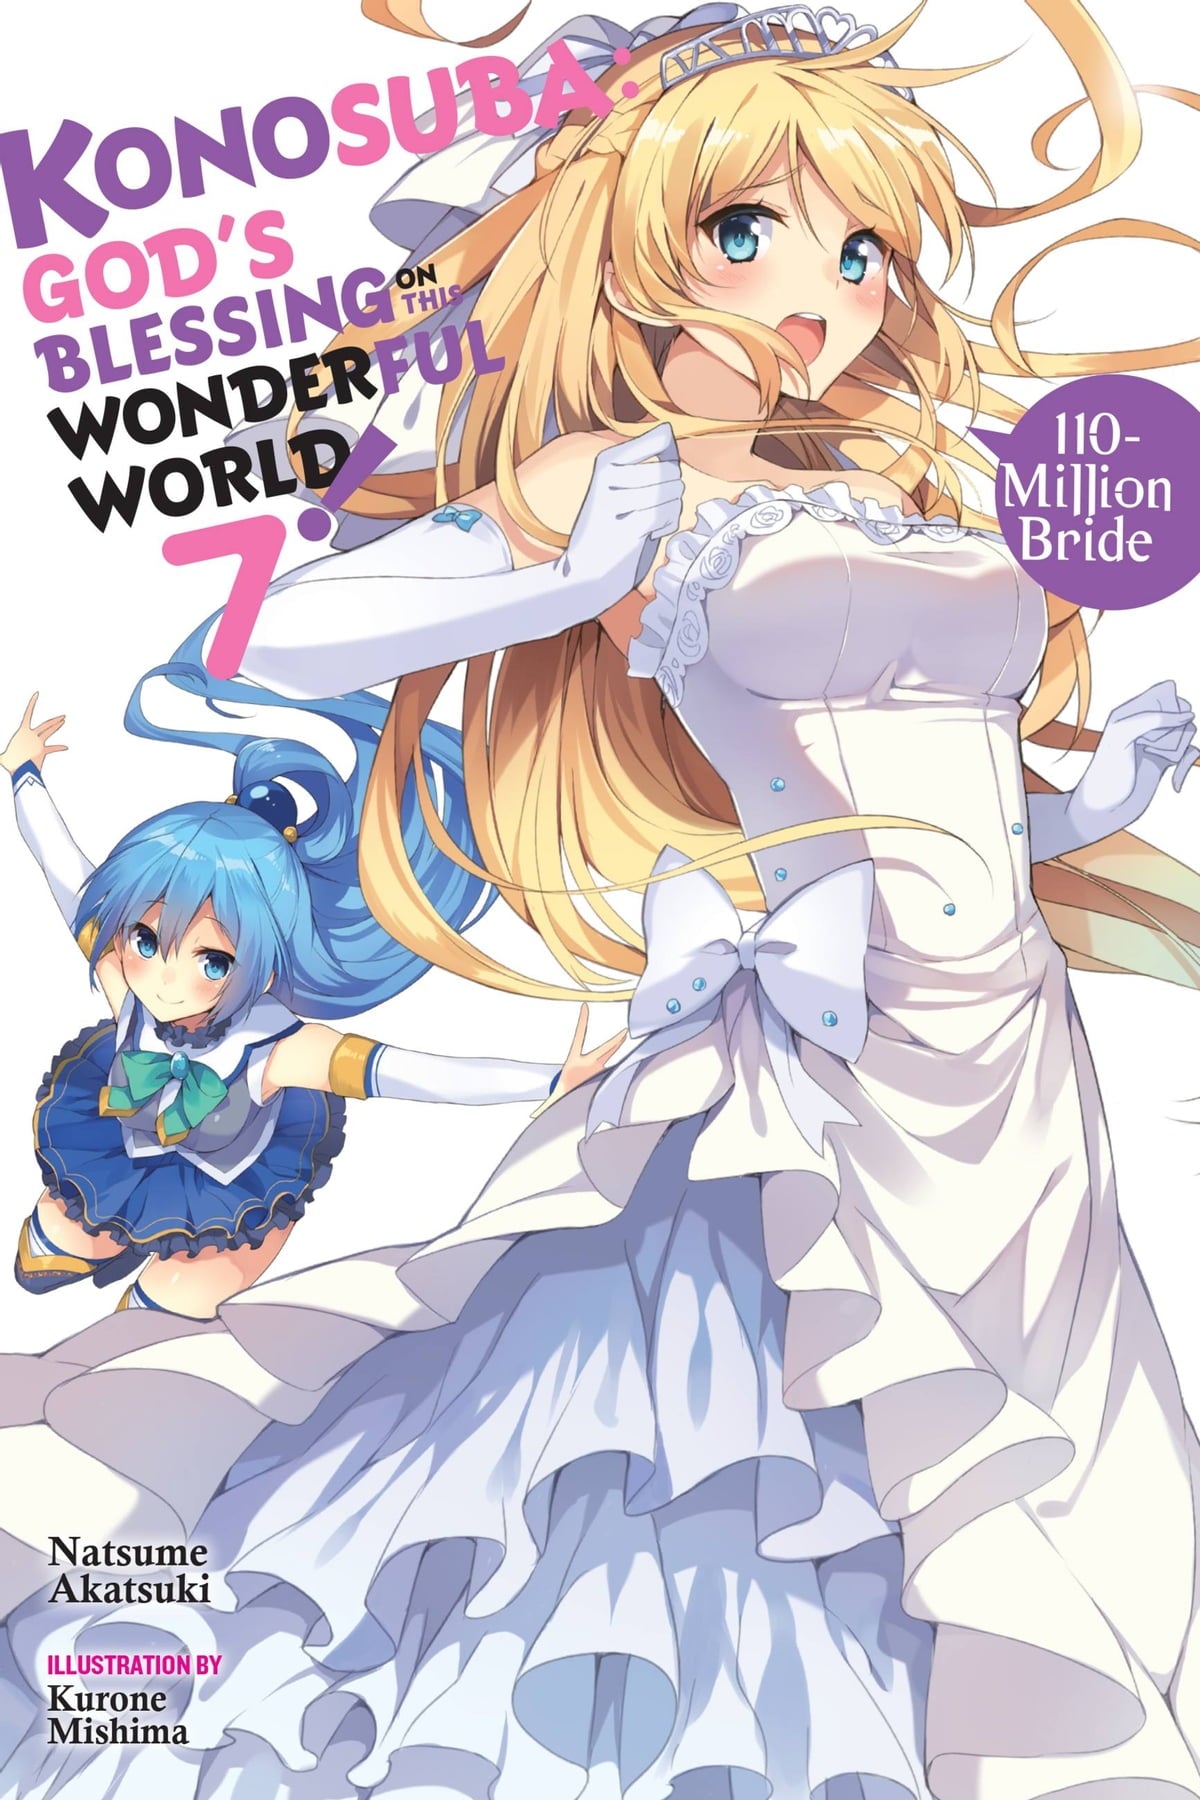 Konosuba: God's Blessing on This Wonderful World! Vol. 07 (Light Novel): 110-Million Bride